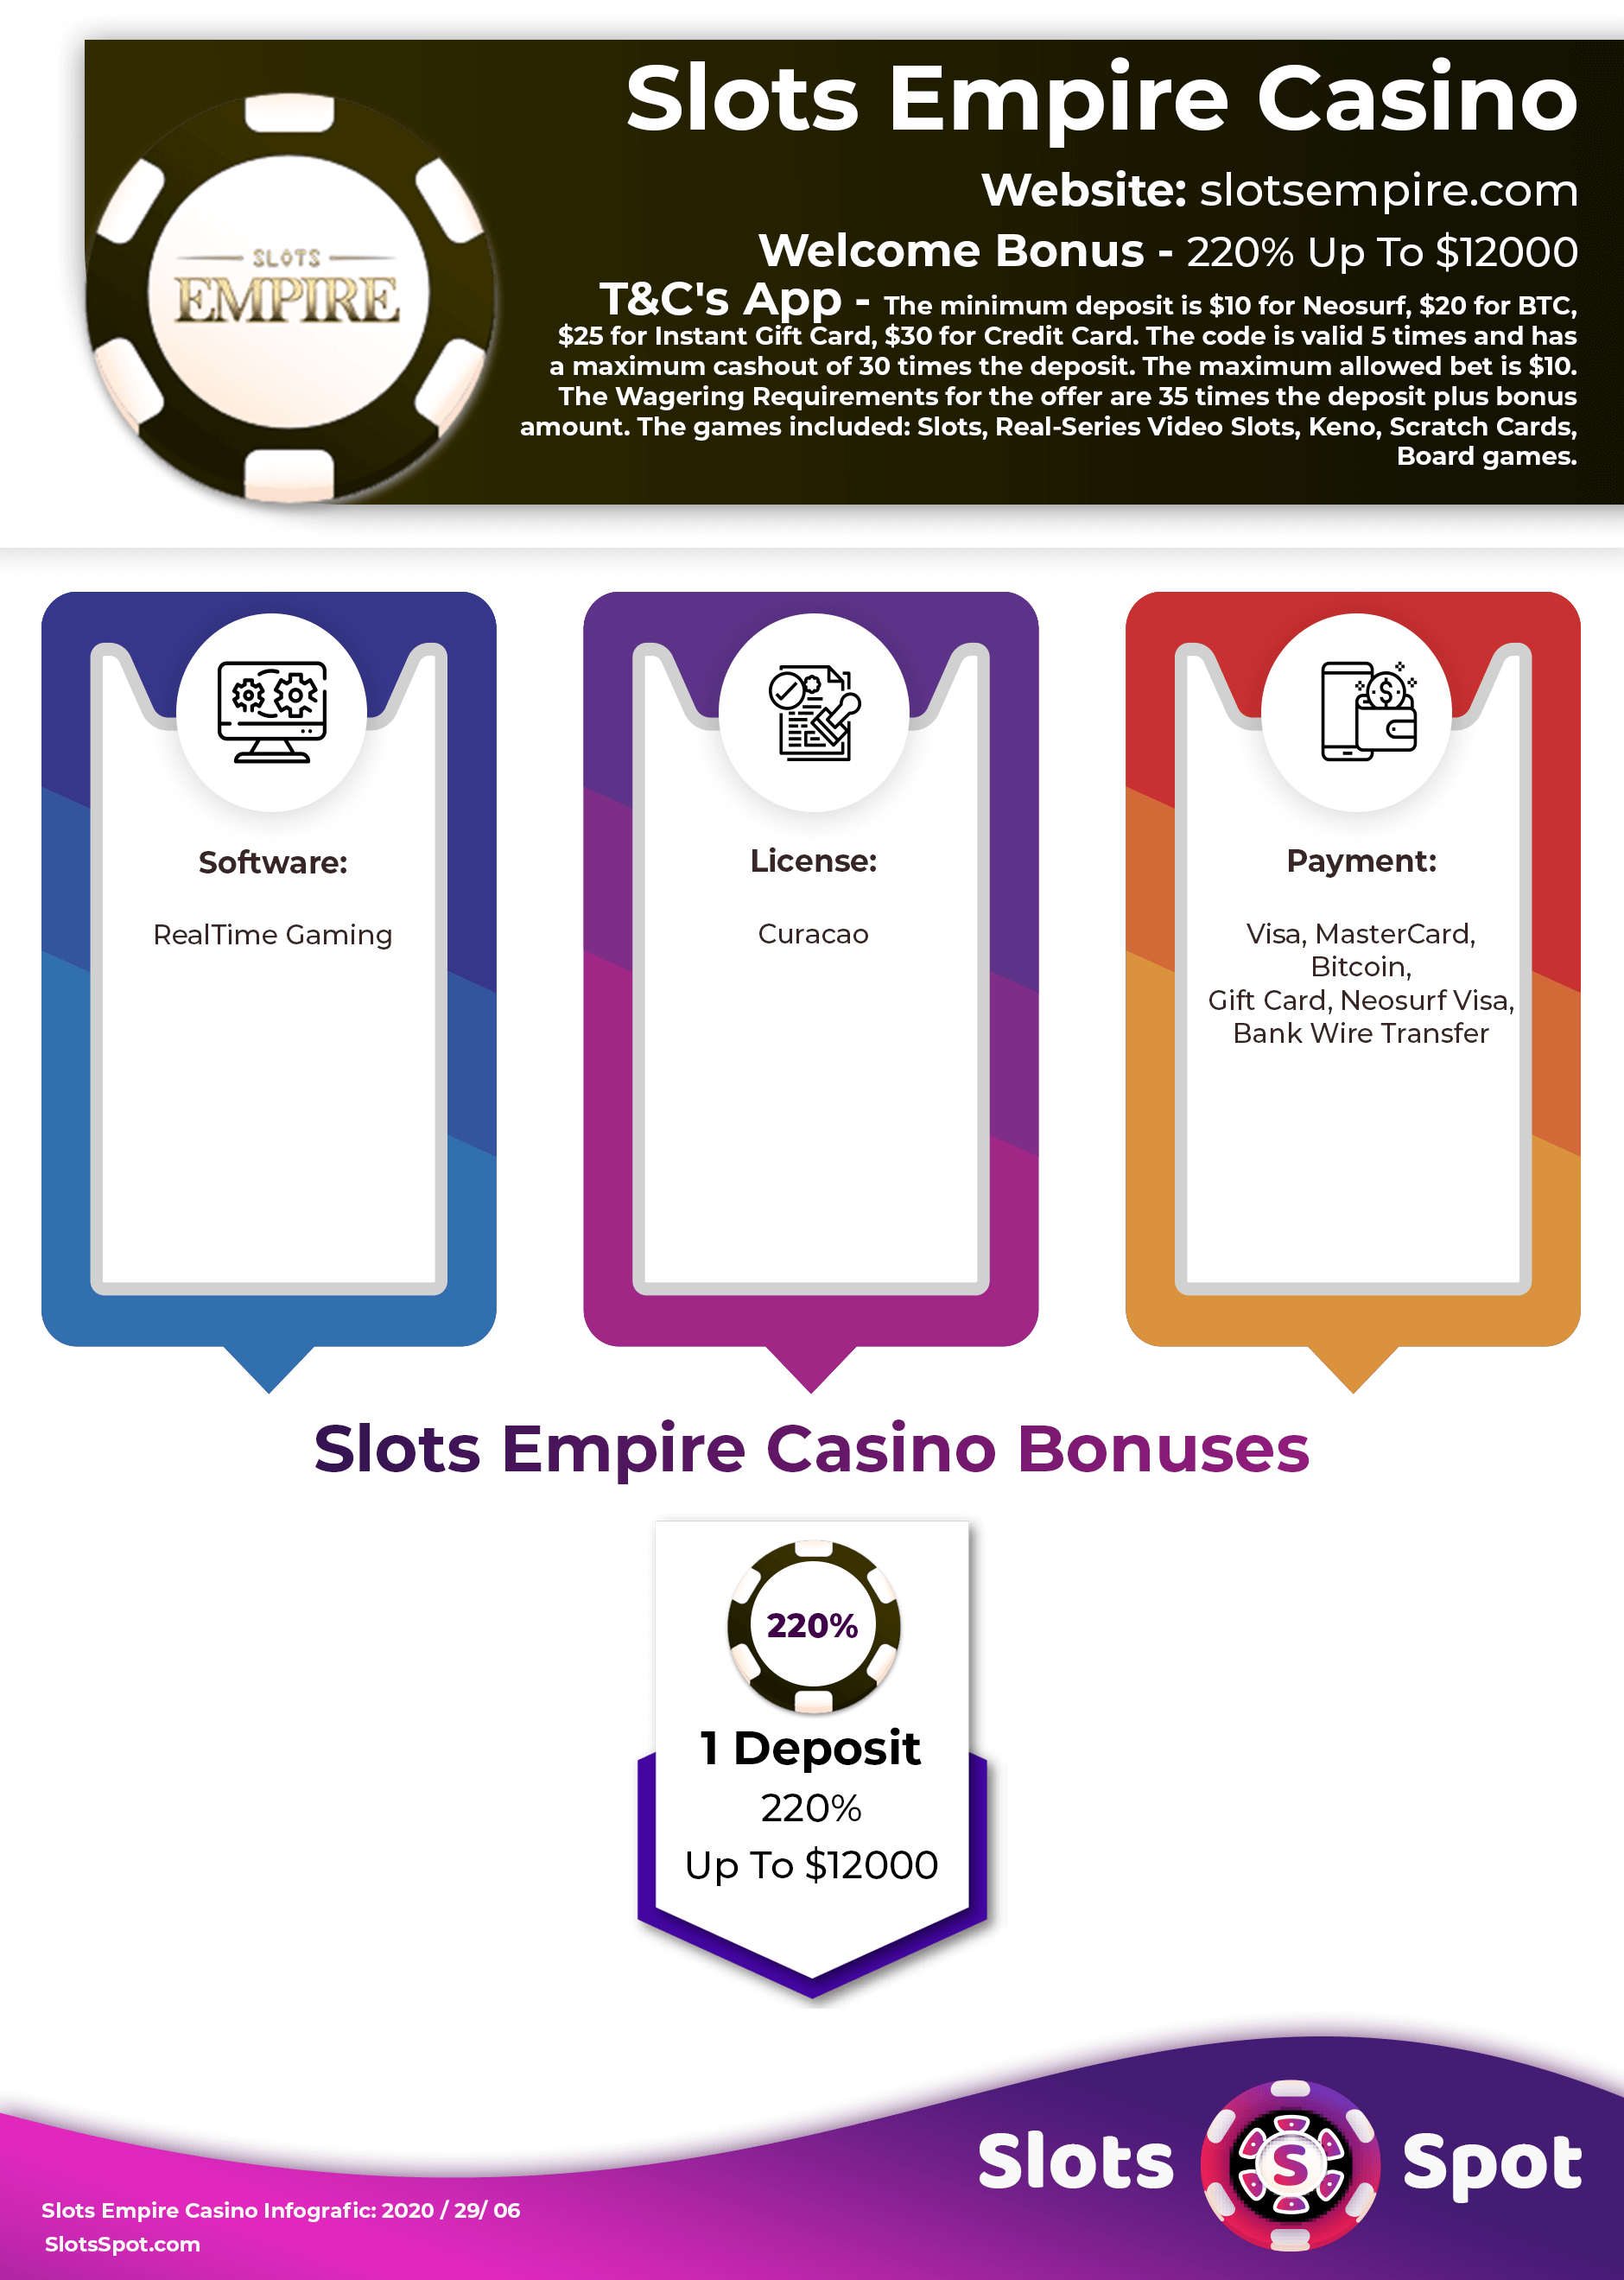 Slots Empire Casino No Deposit Bonus Codes ᗎ August 2020 [Deposit Bonuses]